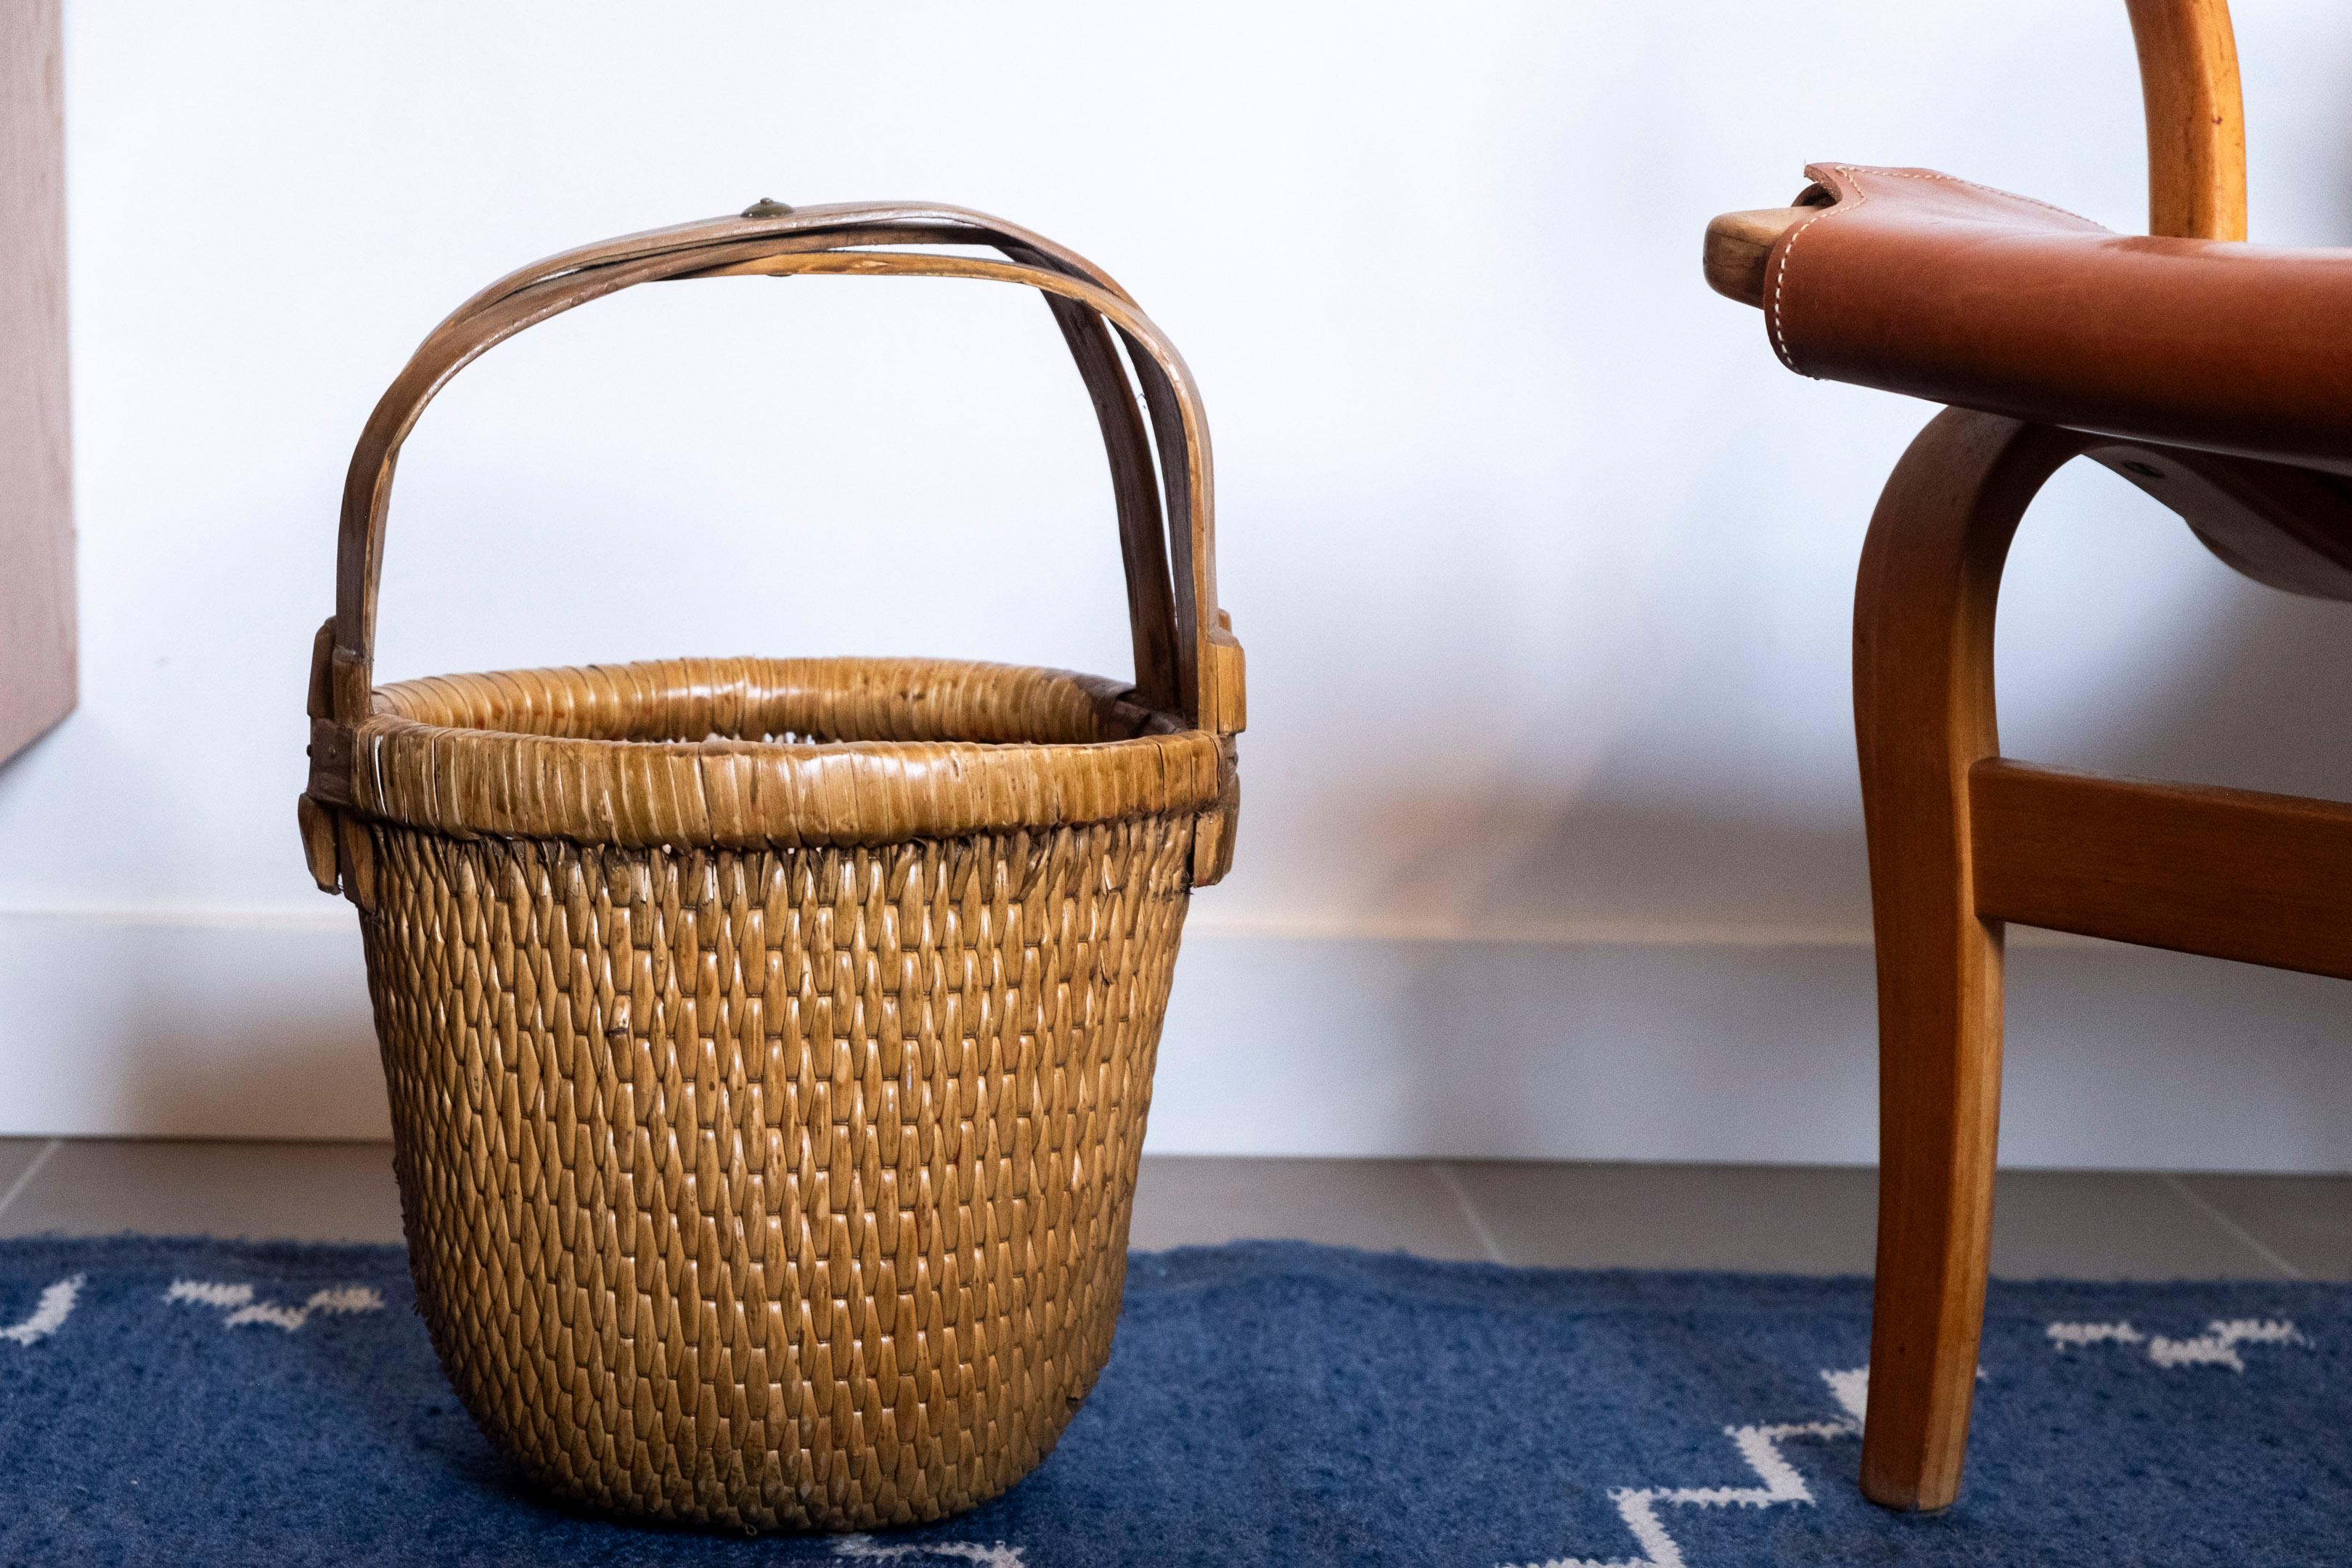 Wunderschöner handgefertigter Reiskorb mit wunderbaren Details.
Schöne dekorative Handarbeit, die zur Aufbewahrung verwendet werden kann.
Ursprünglich wurden sie zum Transport von Reis oder anderen Körnern verwendet.